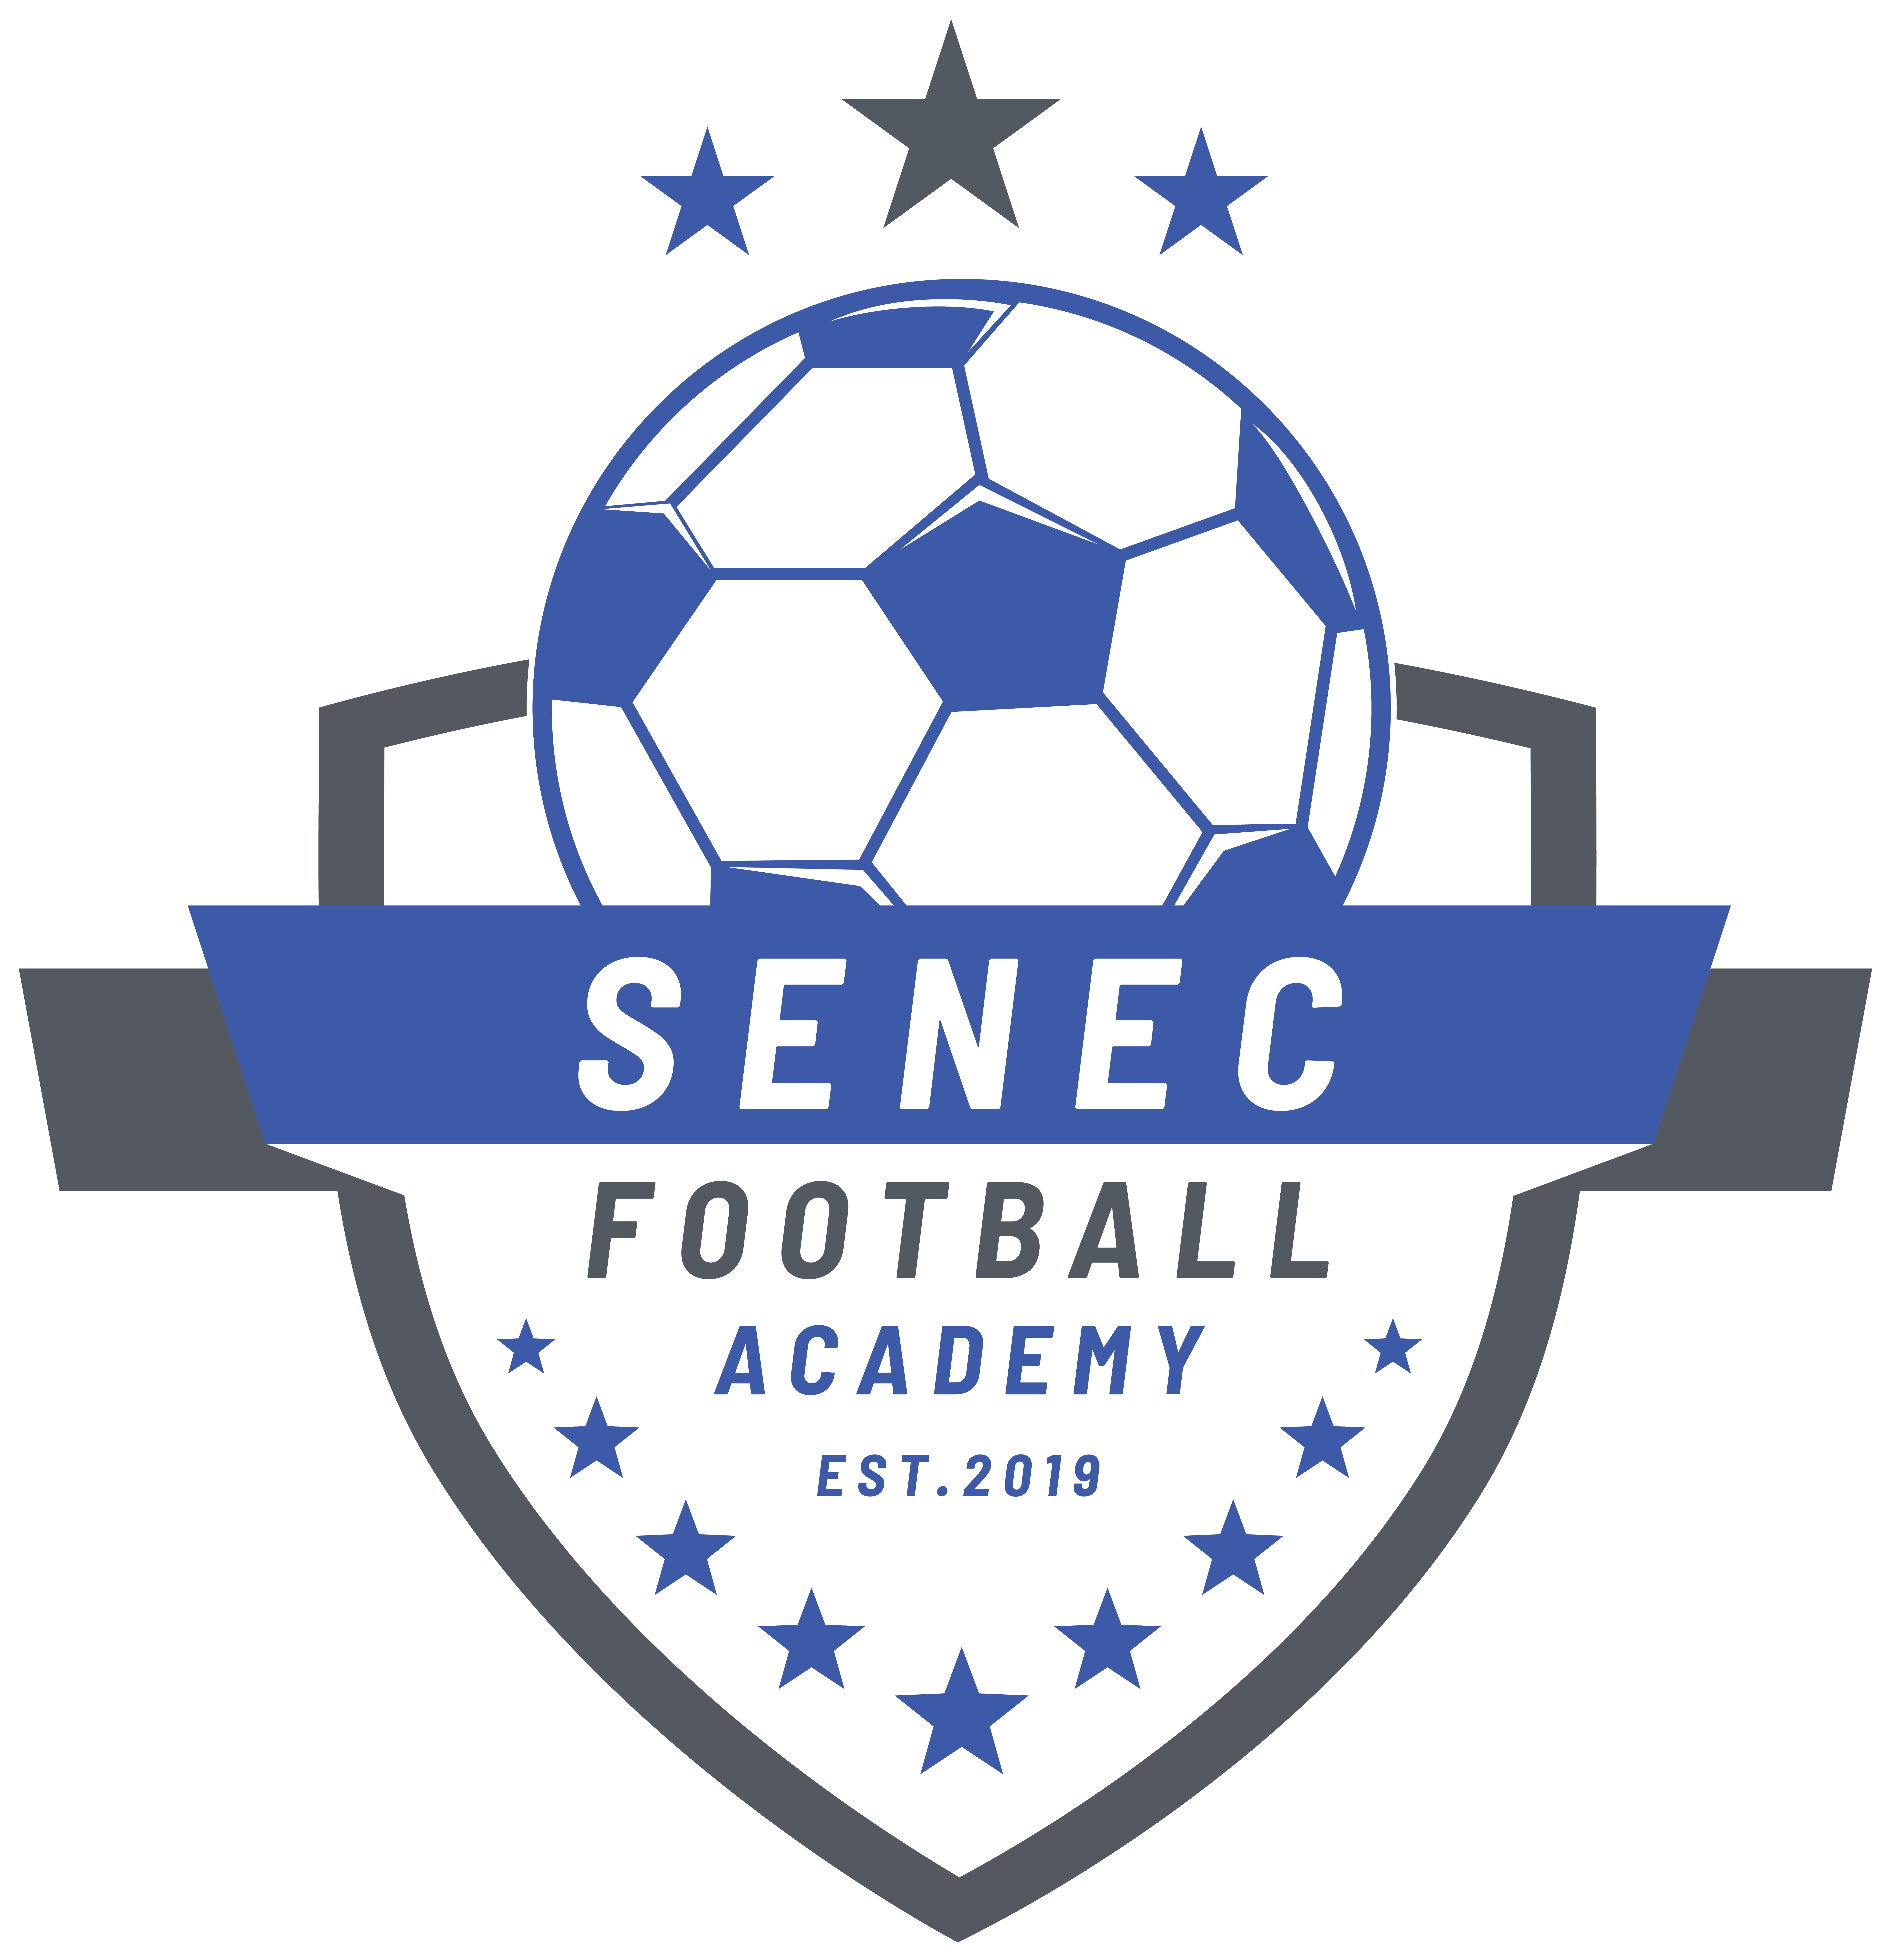 Senec Football Academy logo